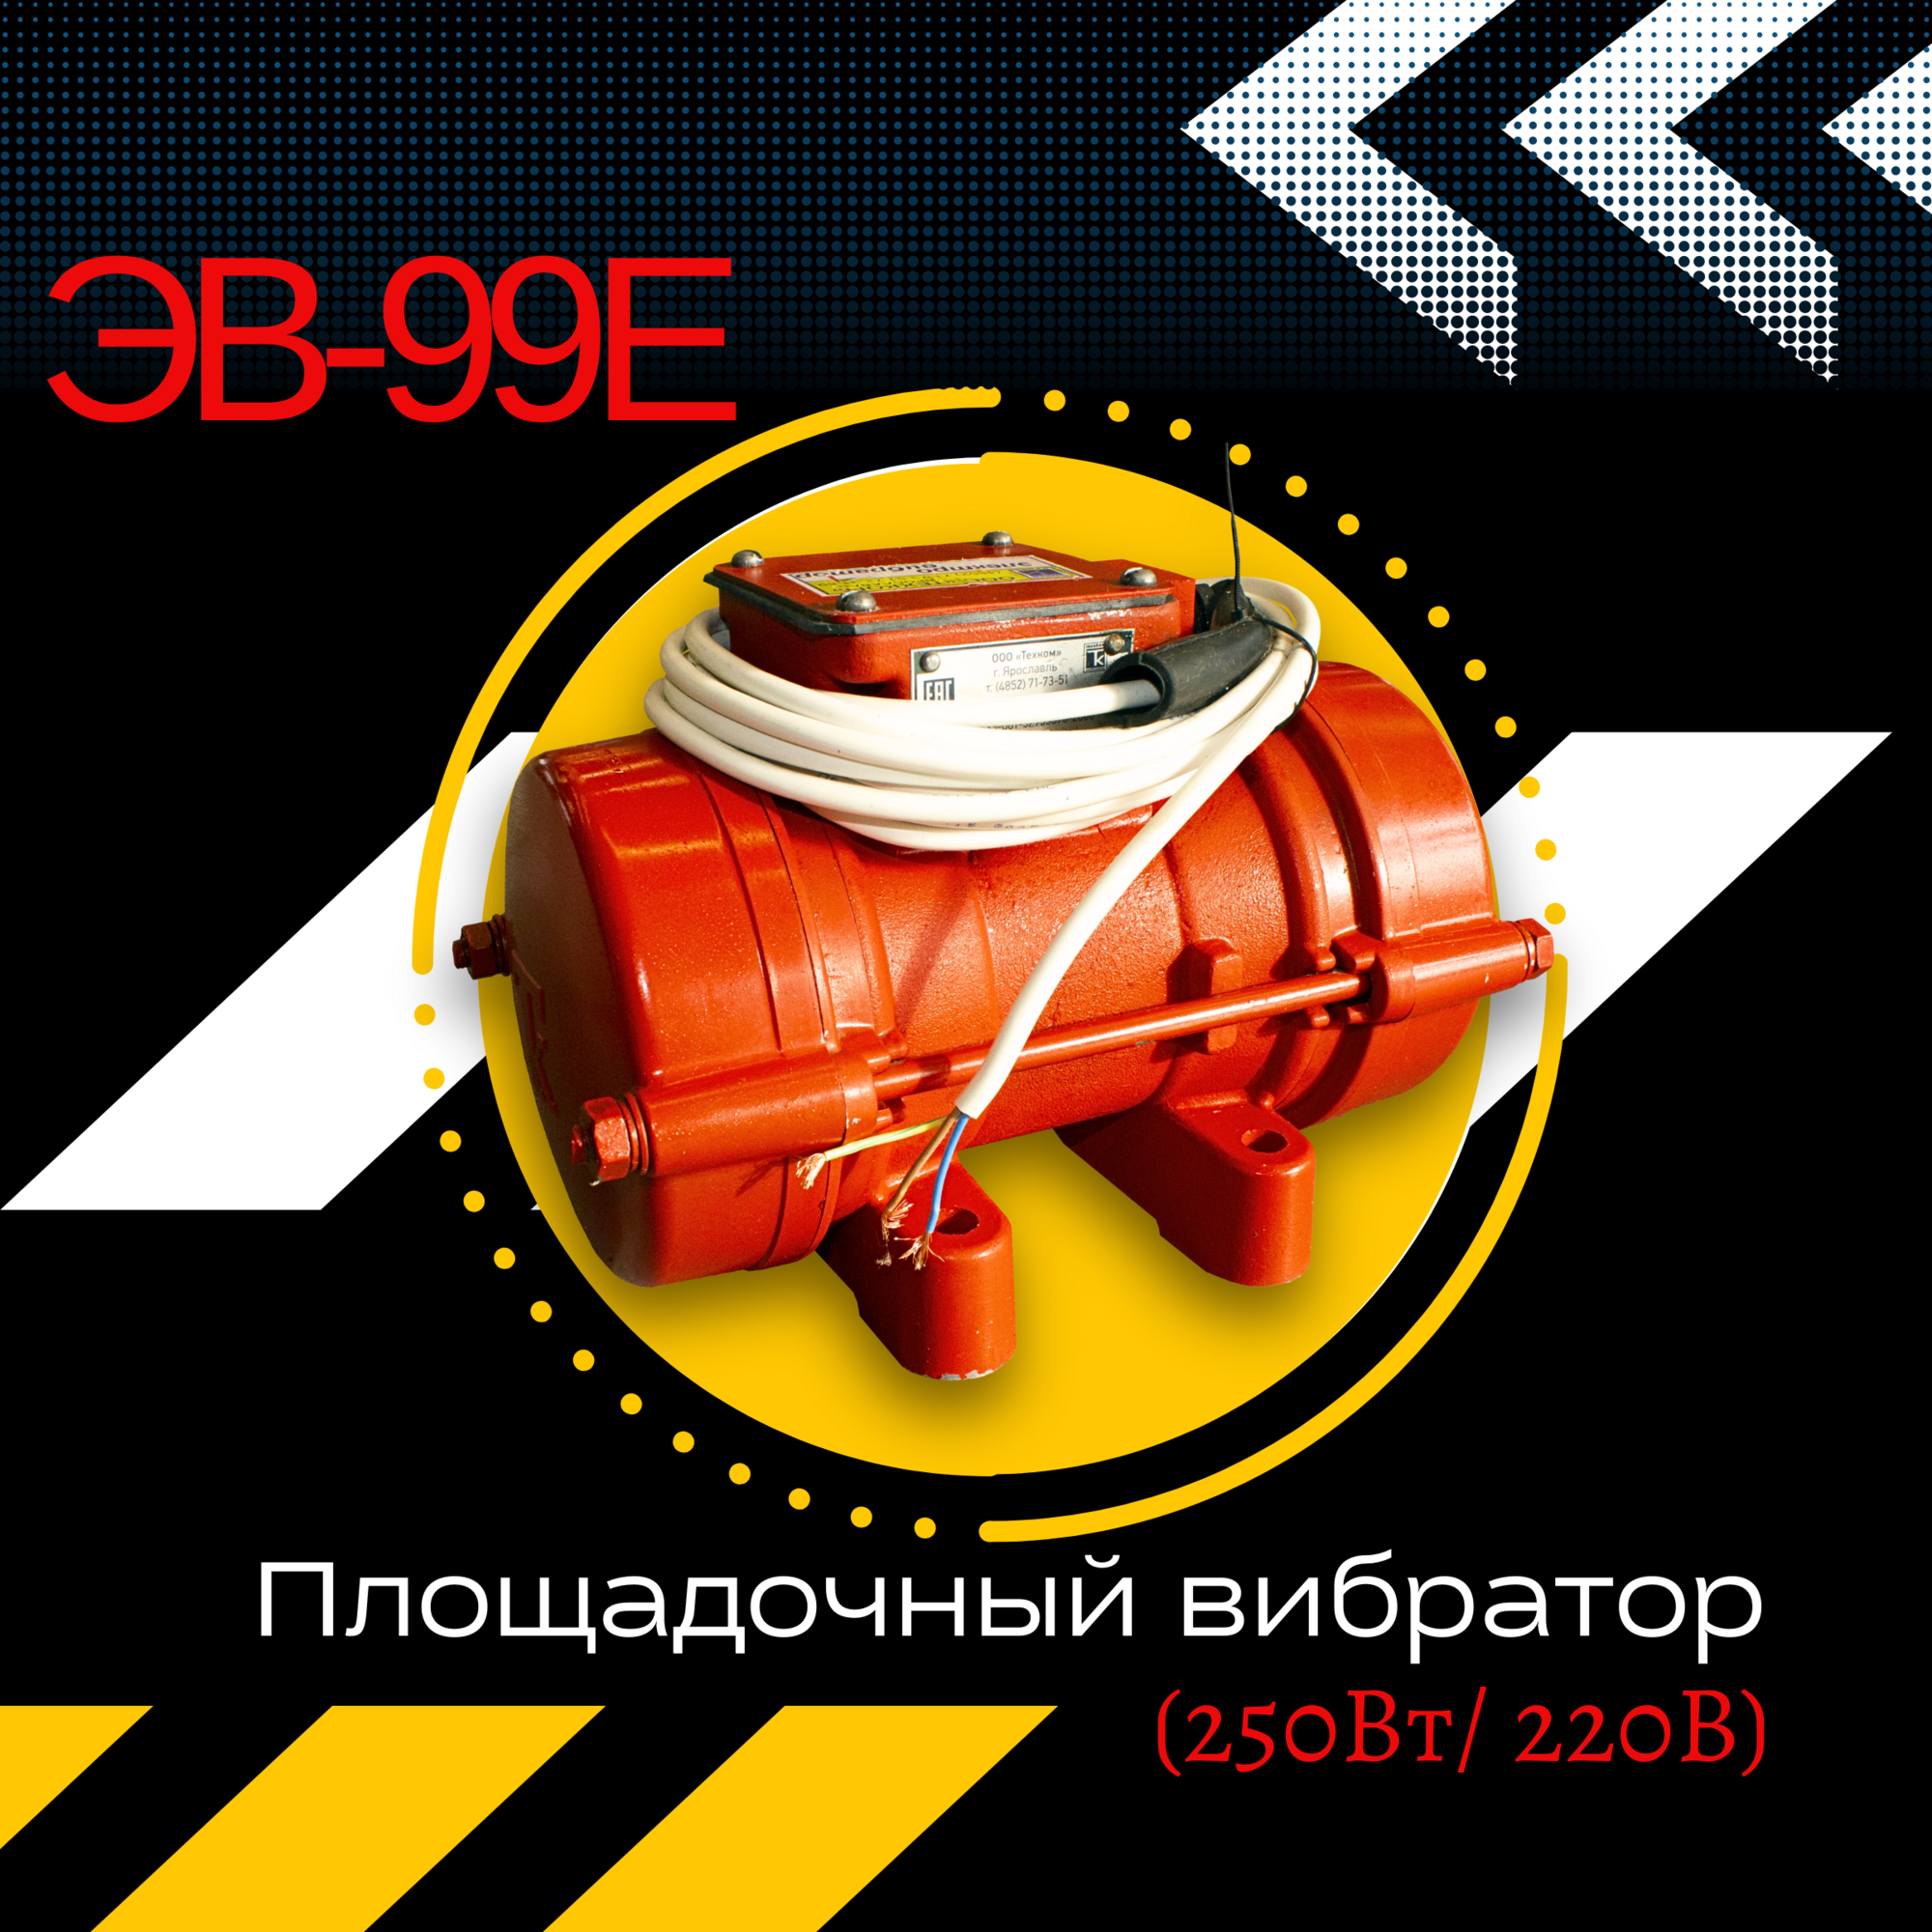 Площадочный вибратор ЭВ-99Е (500 Вт/ 220 В)